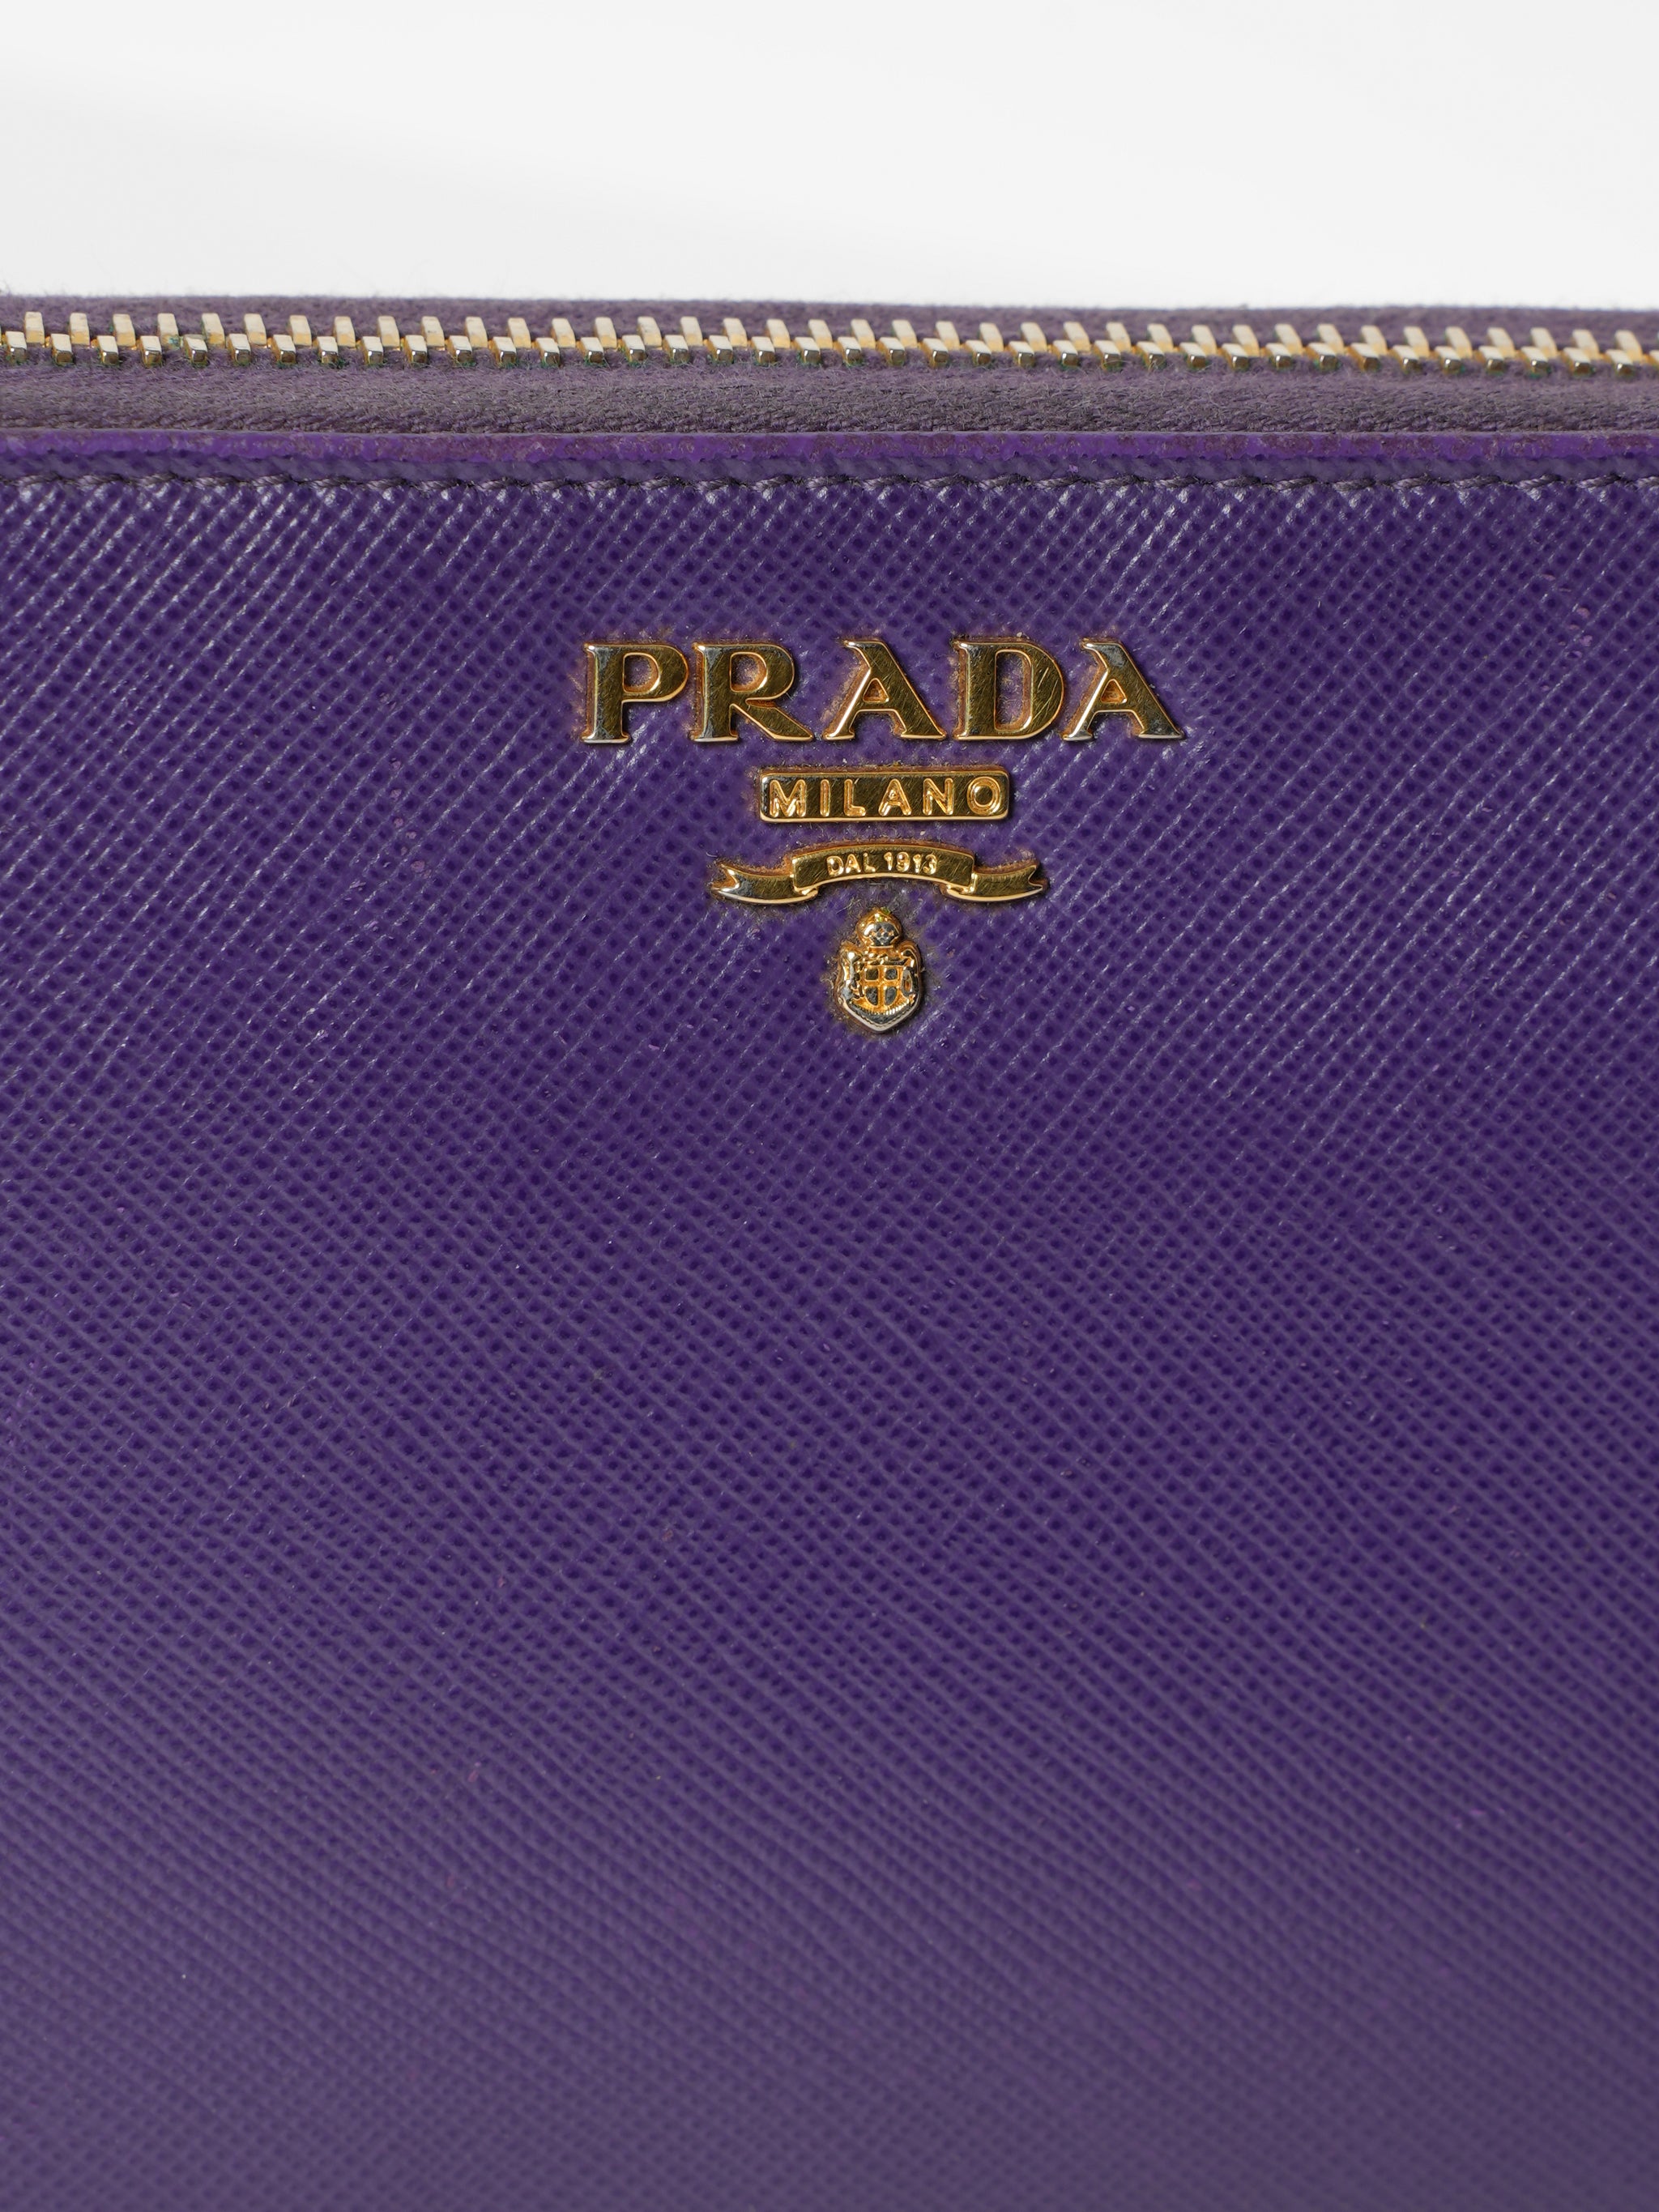 New Prada Diagramme Leather Wallet